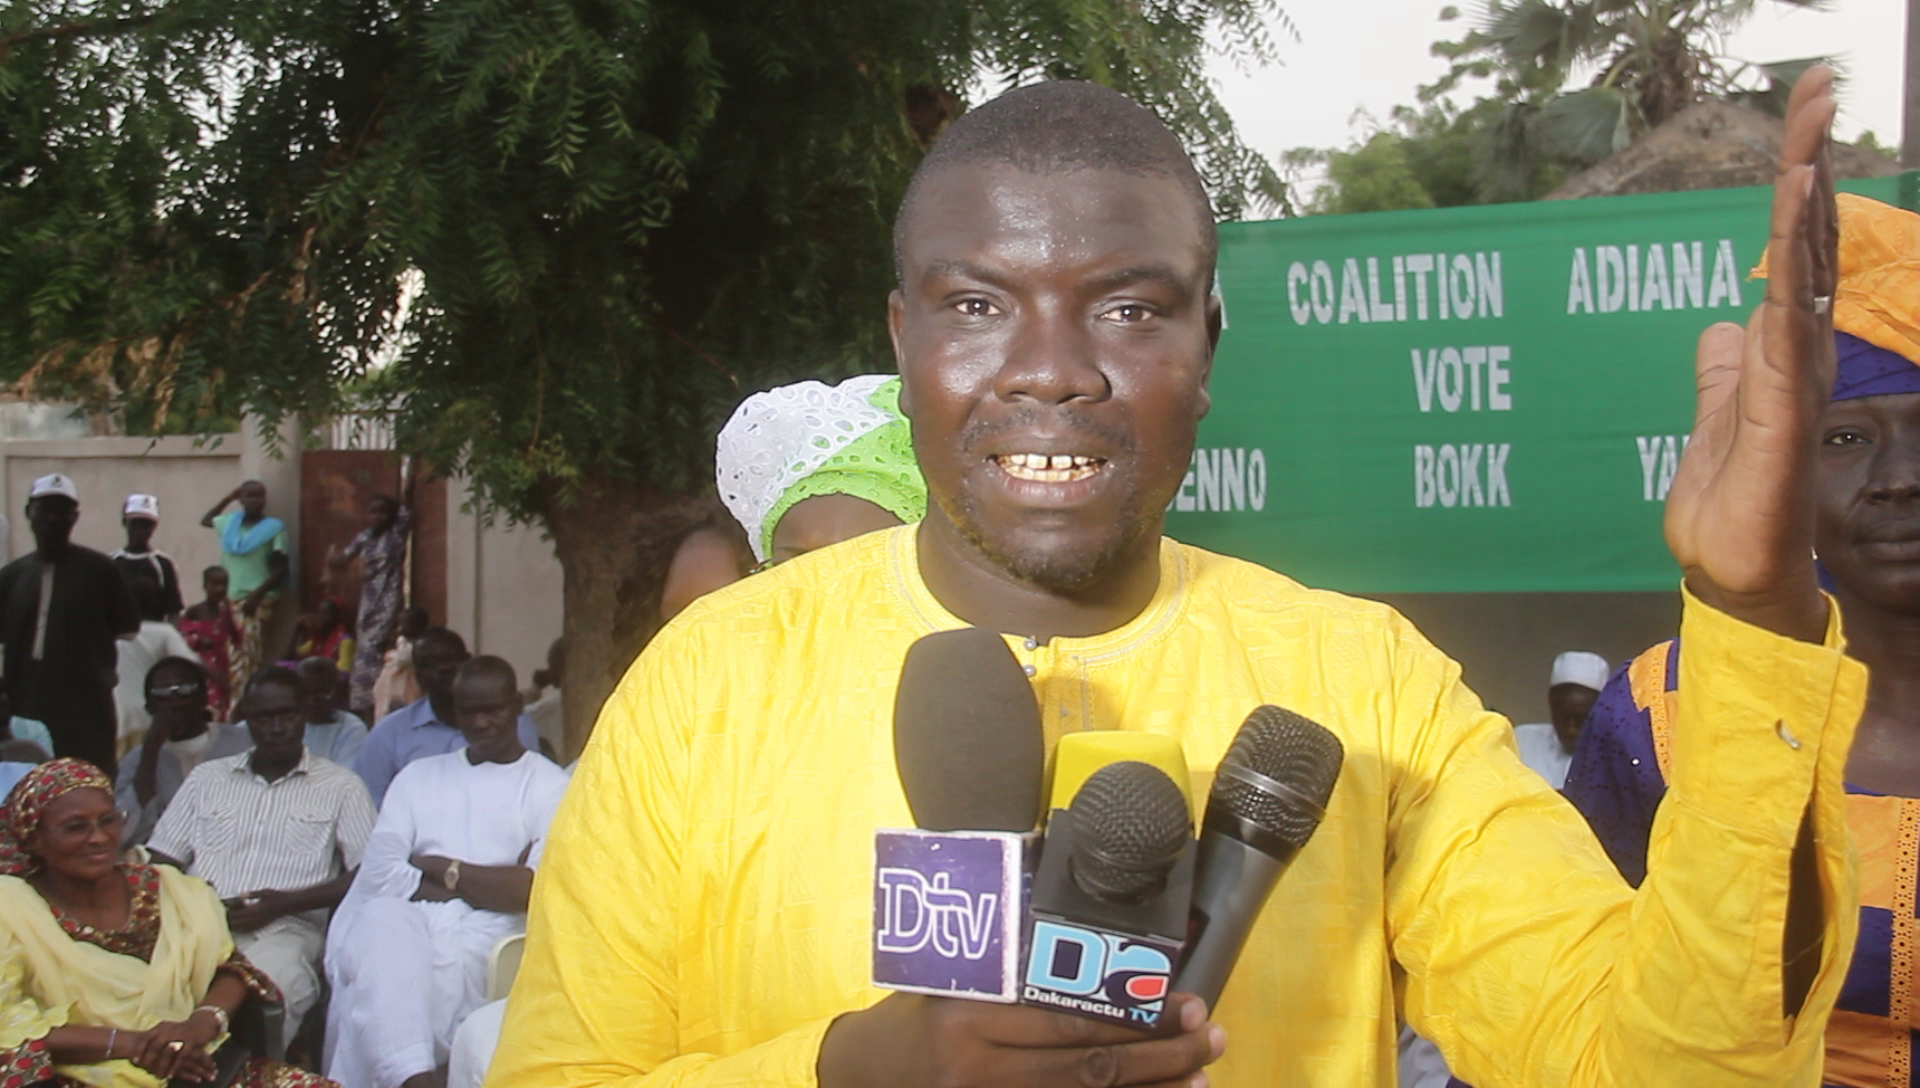 DAROU MOUKHTY - Les partisans de Thierno Lô votent Bby et annoncent une débâcle pour l'opposition